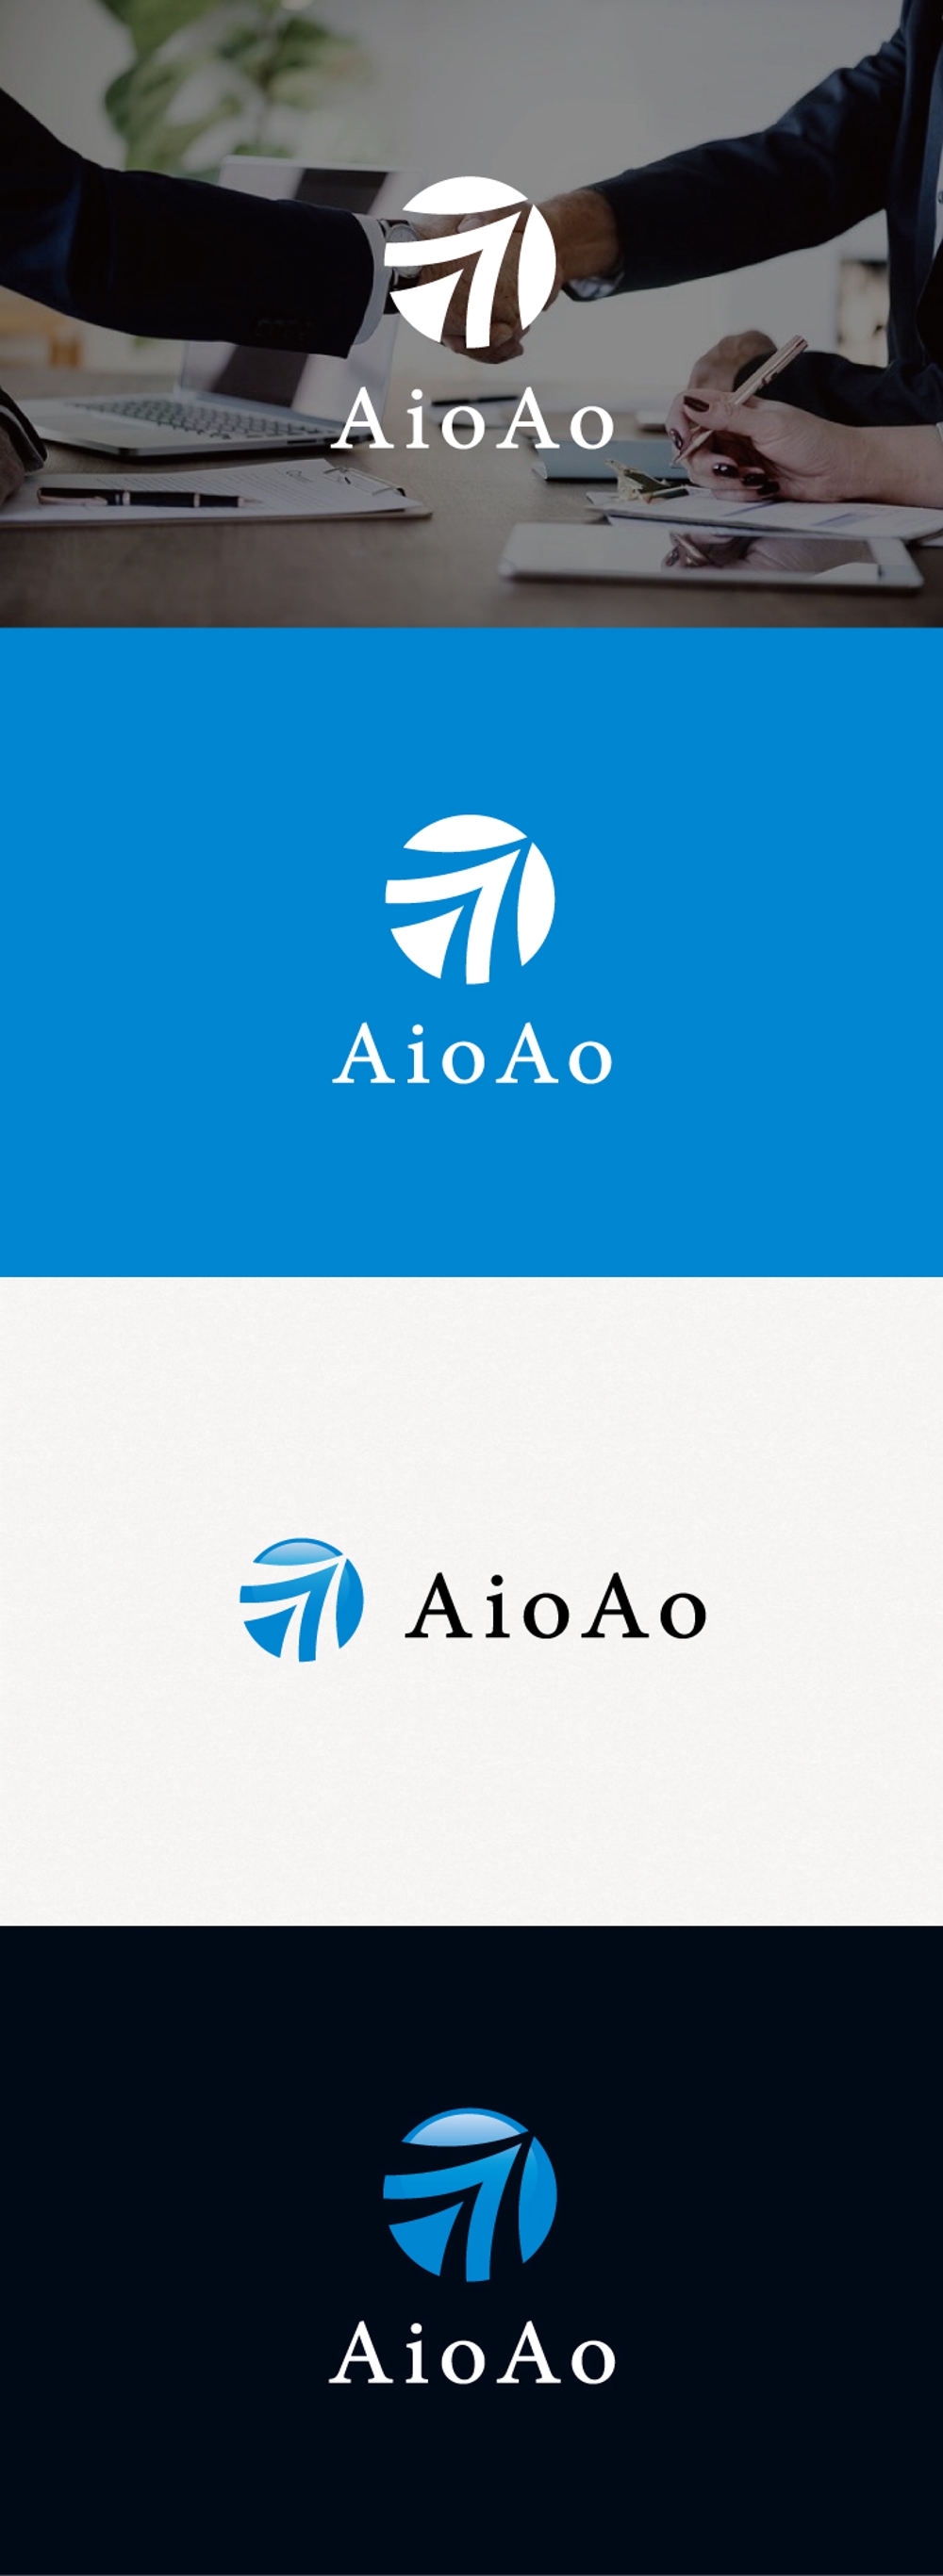 総合会計税務事務所(AioAo)のロゴの作成